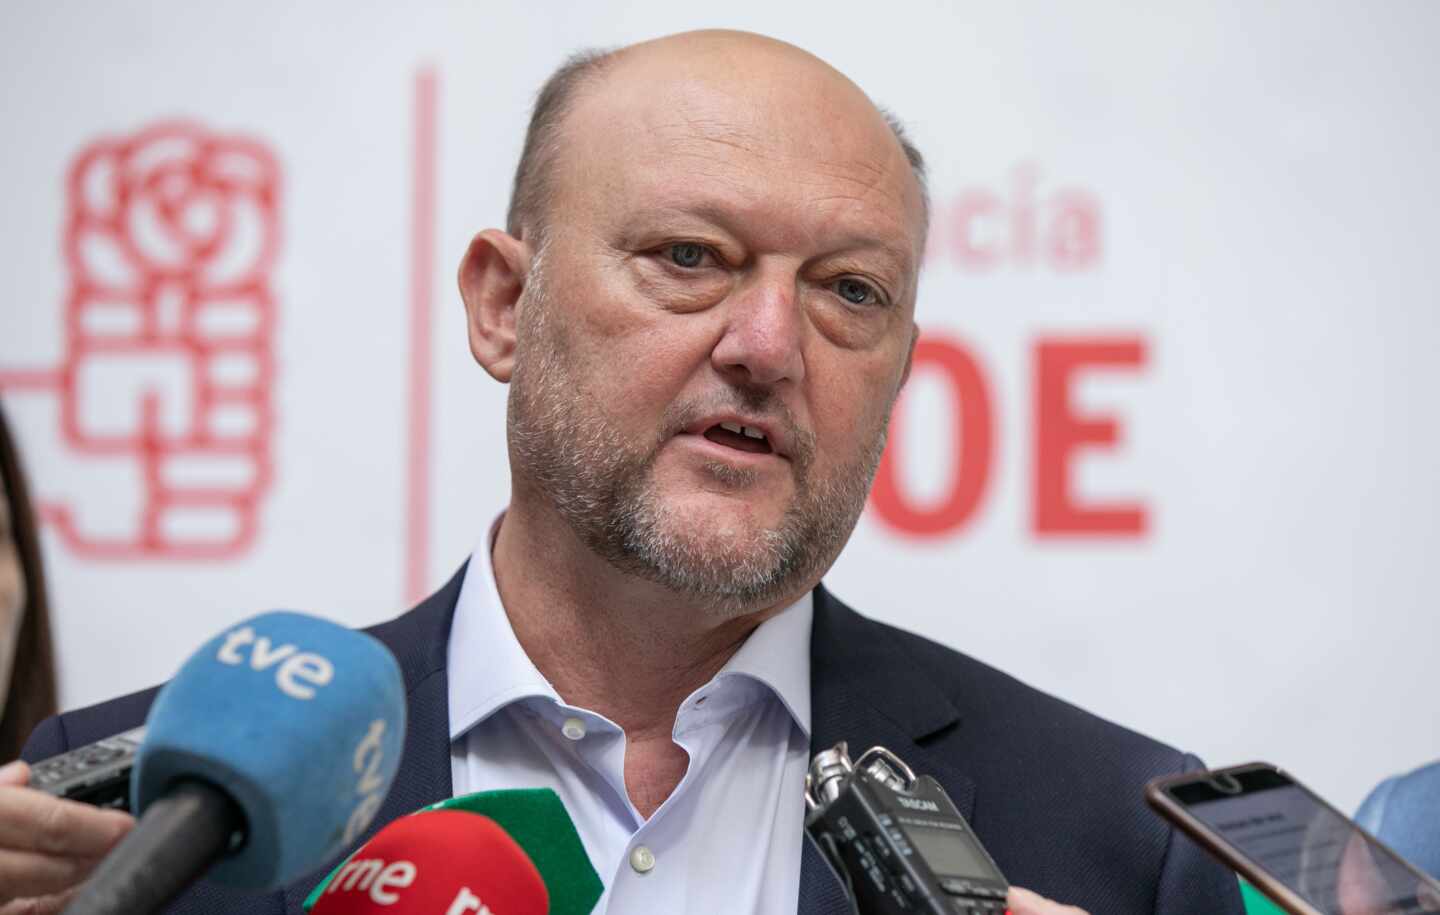 El PSOE andaluz pide el cese del director de informativos de Canal Sur por "manipulación y falta de pluridad"